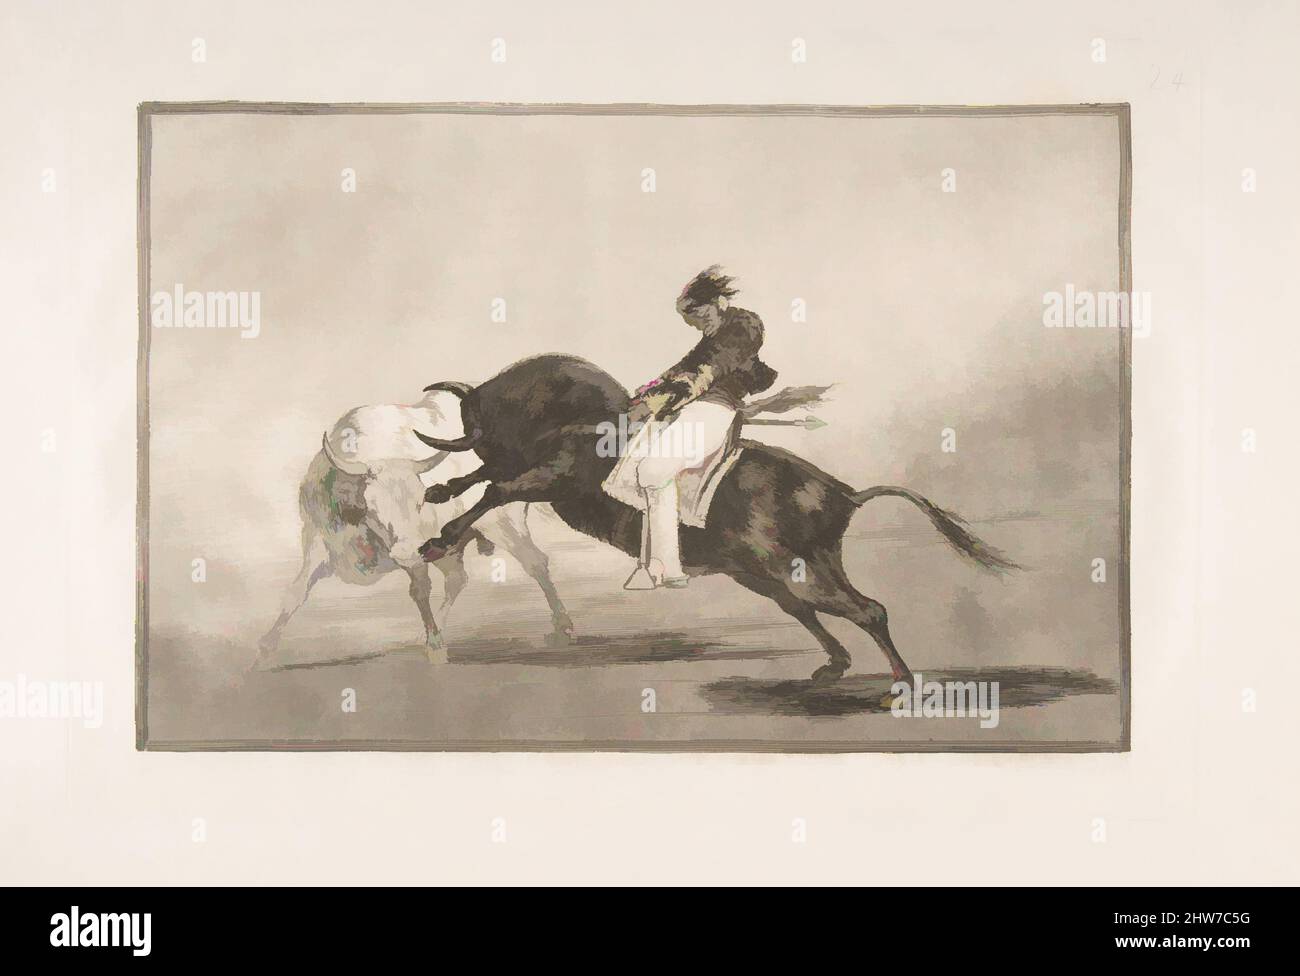 Art inspiré par la planche 24 de la 'Tauromaquia': Le même Ceballos monté sur un autre taureau casse les lances courtes dans l'anneau à Madrid., 1816, Etching, craie d'aquatint, point sec et burin, Plaque : 9 1/2 x 14 po. (24,2 x 35,5 cm), Prints, Goya (Francisco de Goya y Lucientes) (espagnol, oeuvres classiques modernisées par Artotop avec une touche de modernité. Formes, couleur et valeur, impact visuel accrocheur sur l'art émotions par la liberté d'œuvres d'art d'une manière contemporaine. Un message intemporel qui cherche une nouvelle direction créative. Artistes qui se tournent vers le support numérique et créent le NFT Artotop Banque D'Images